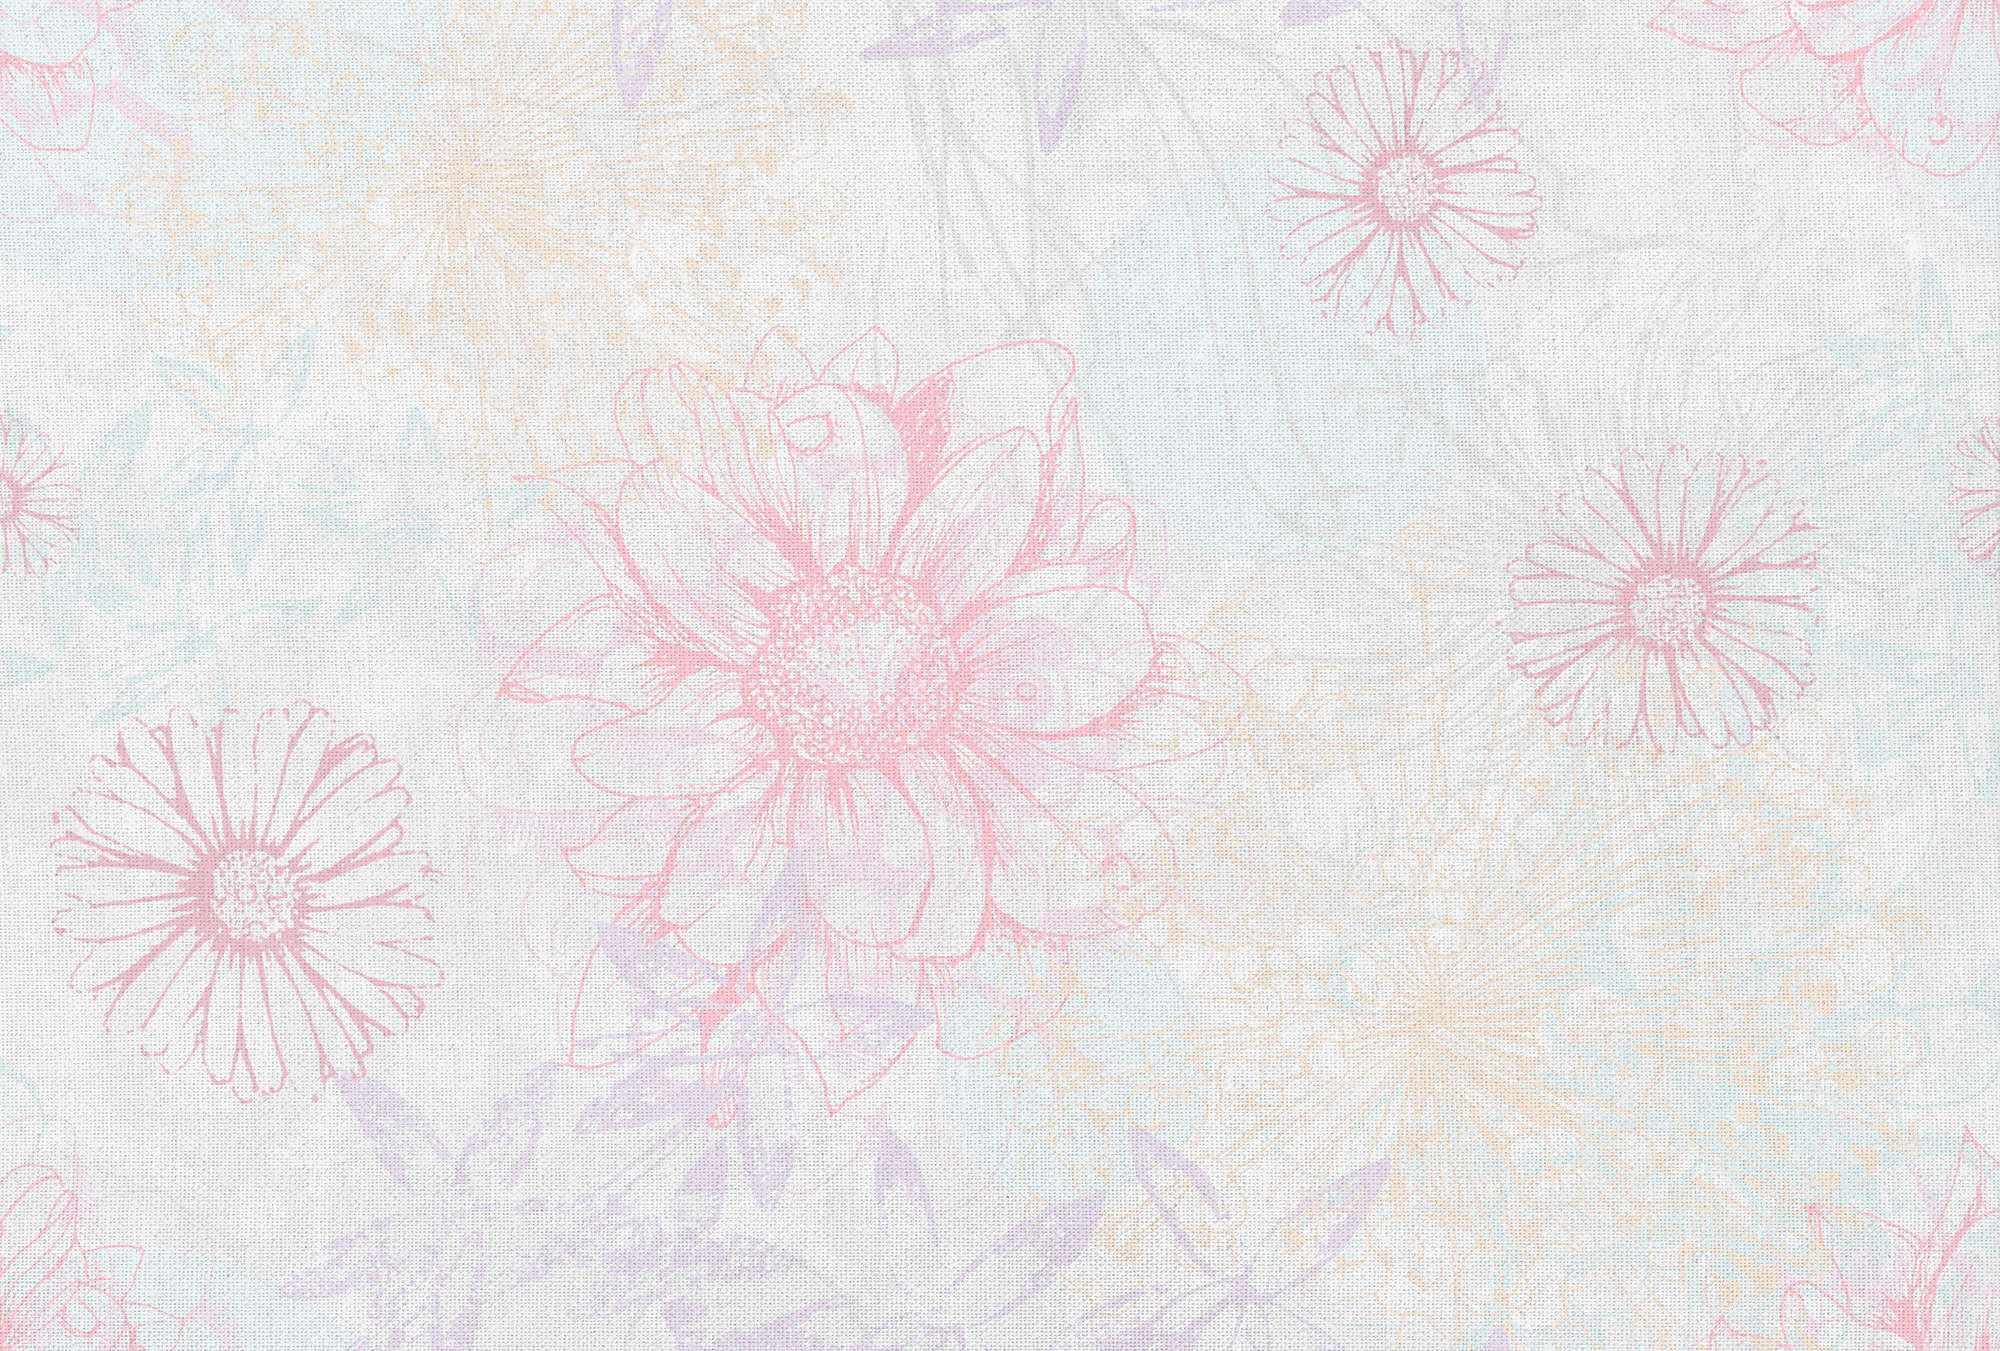             Papel pintado de aspecto de lino y con motivos florales - rosa, blanco, azul
        